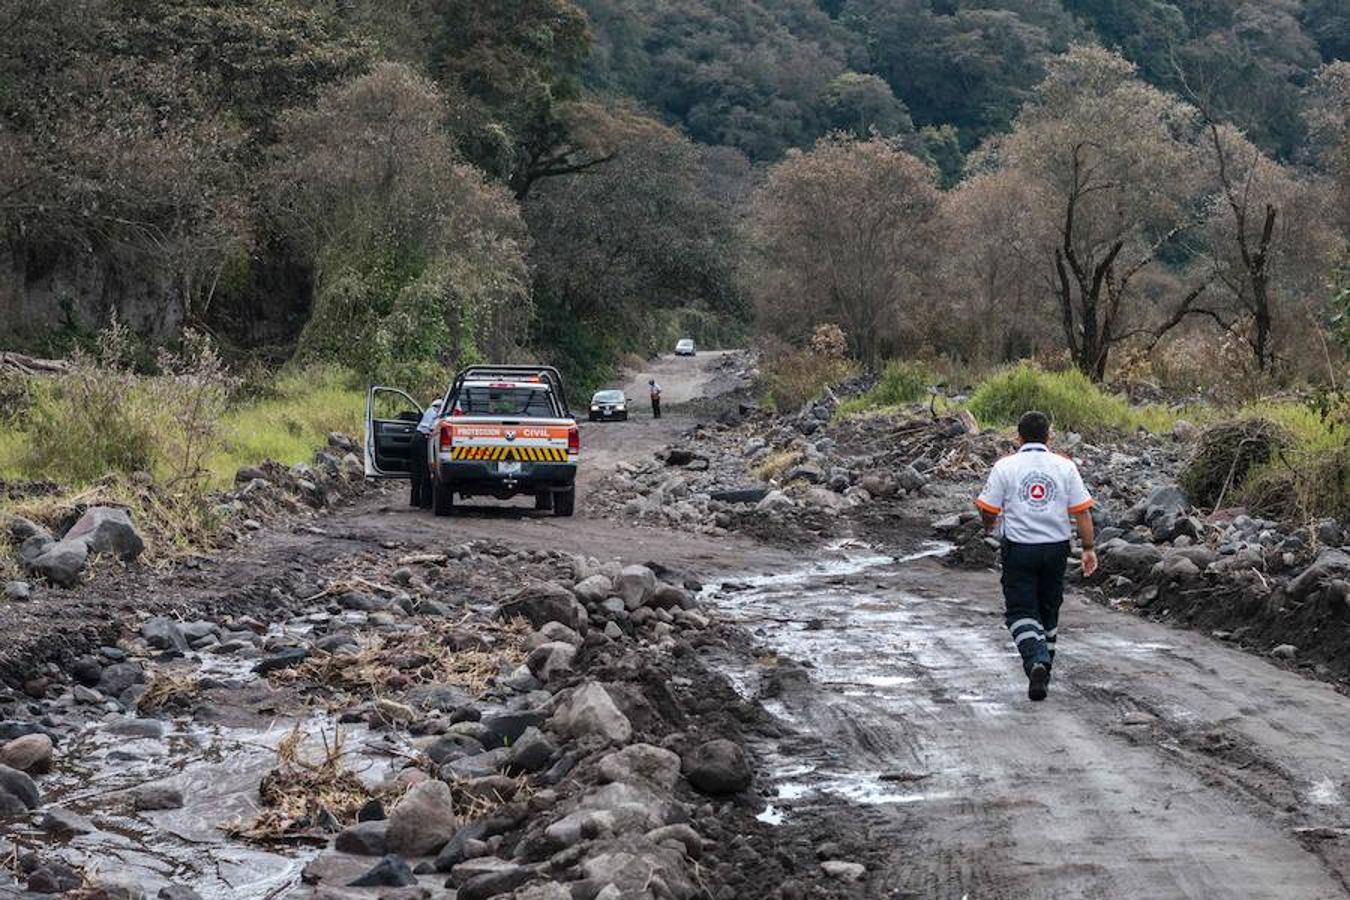 La zona boscosa aledaña al volcán de Colima, ubicado en el oeste de México, que incrementó su actividad, por lo que las autoridades del estado de Colima informan que las comunidades de La Yerbabuena y La Becerrera continuarán evacuadas